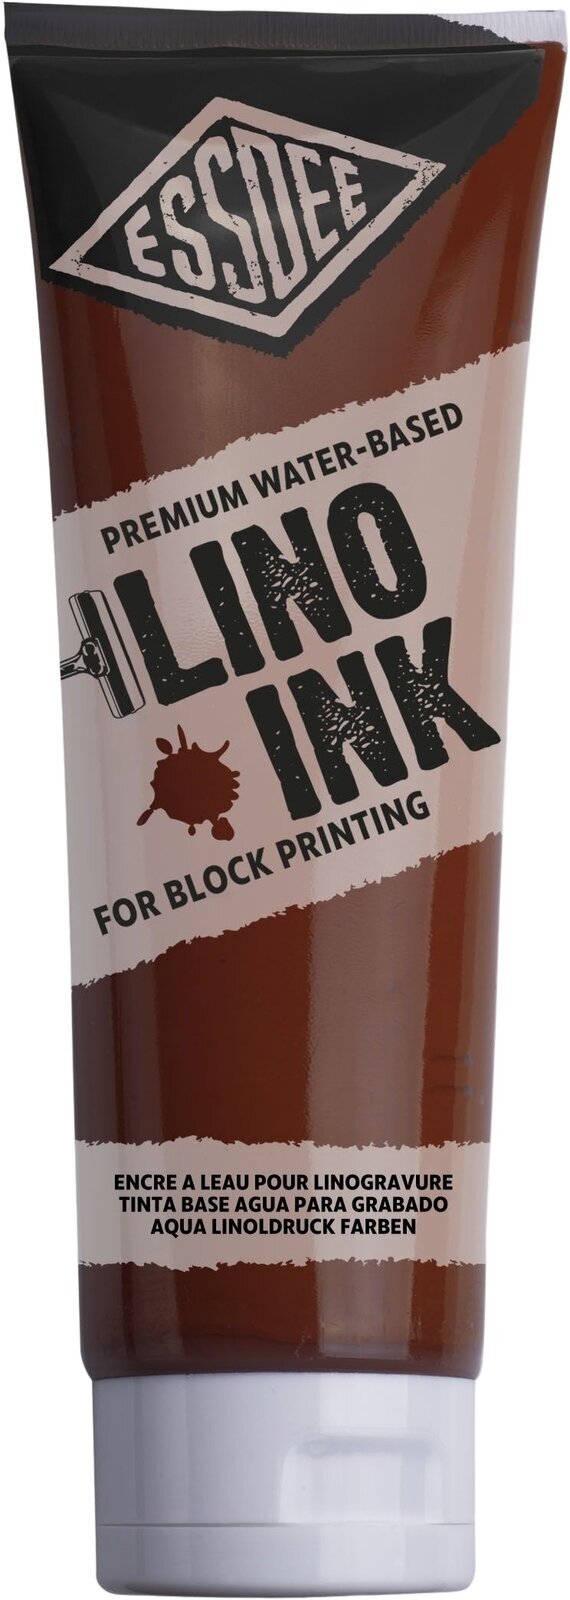 Peintures pour la linogravure Essdee Block Printing Ink Peintures pour la linogravure Burnt Sienna 300 ml